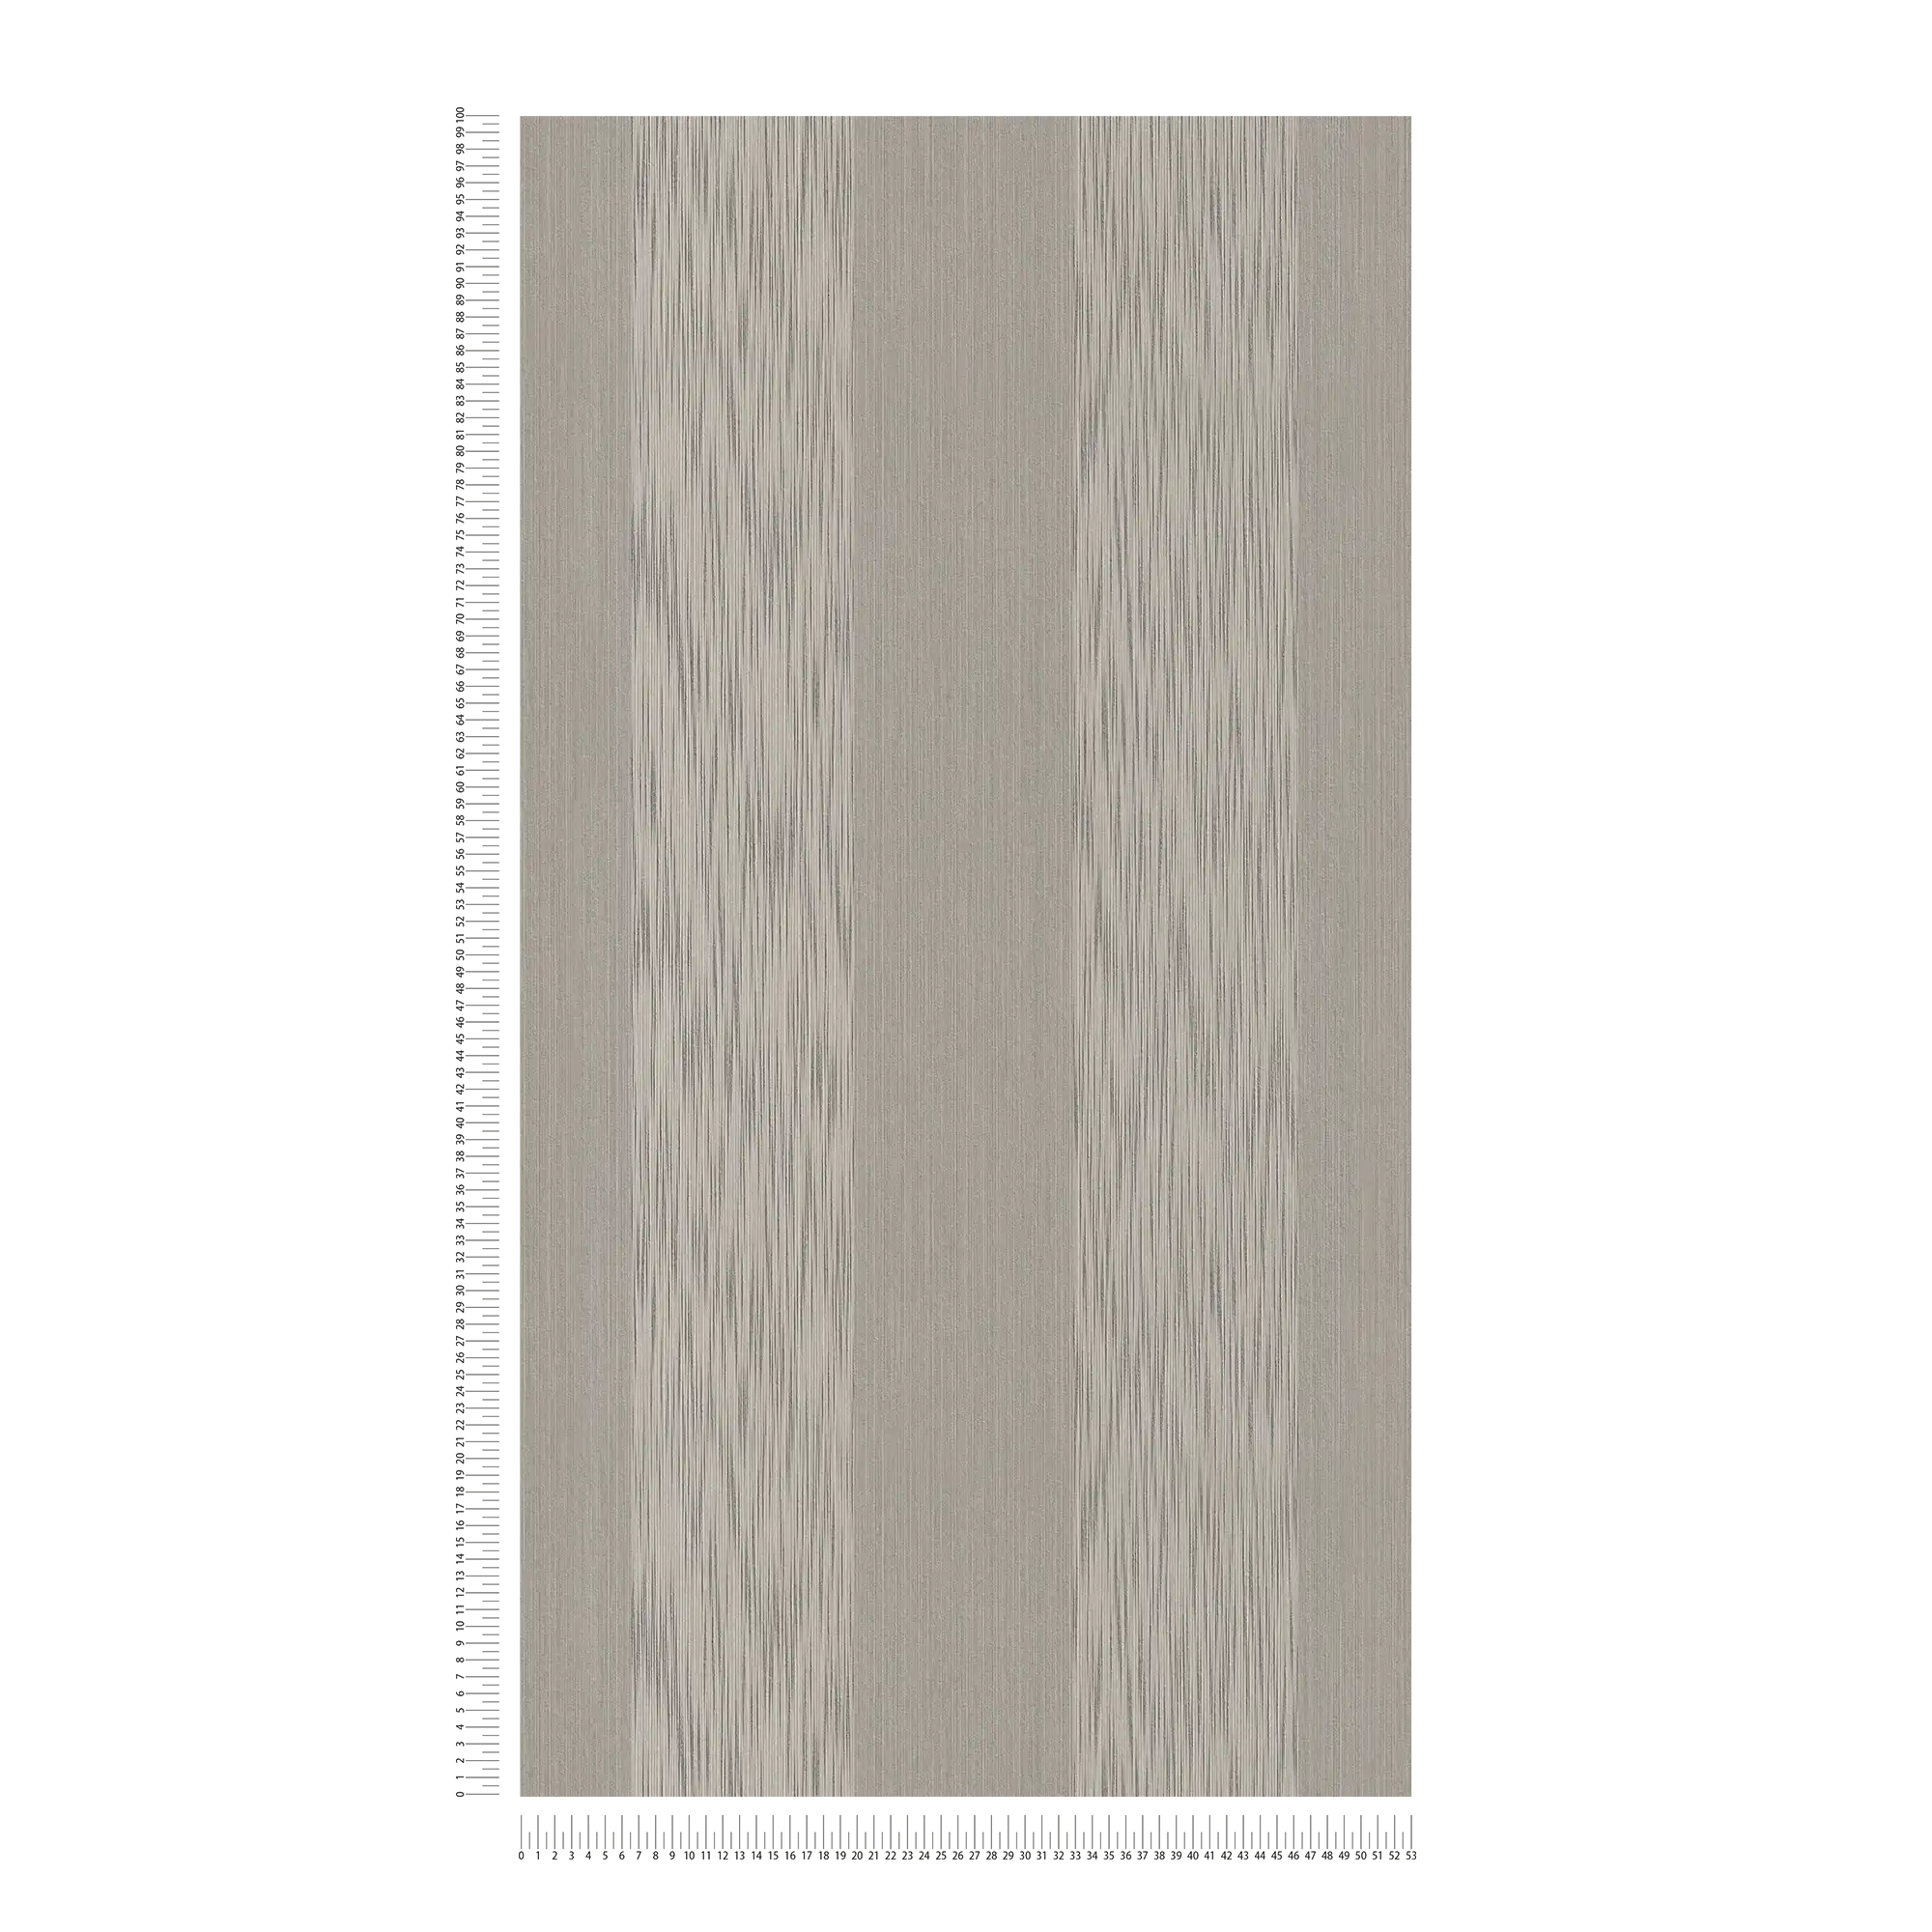             Papel pintado de rayas melange con efecto de textura - gris
        